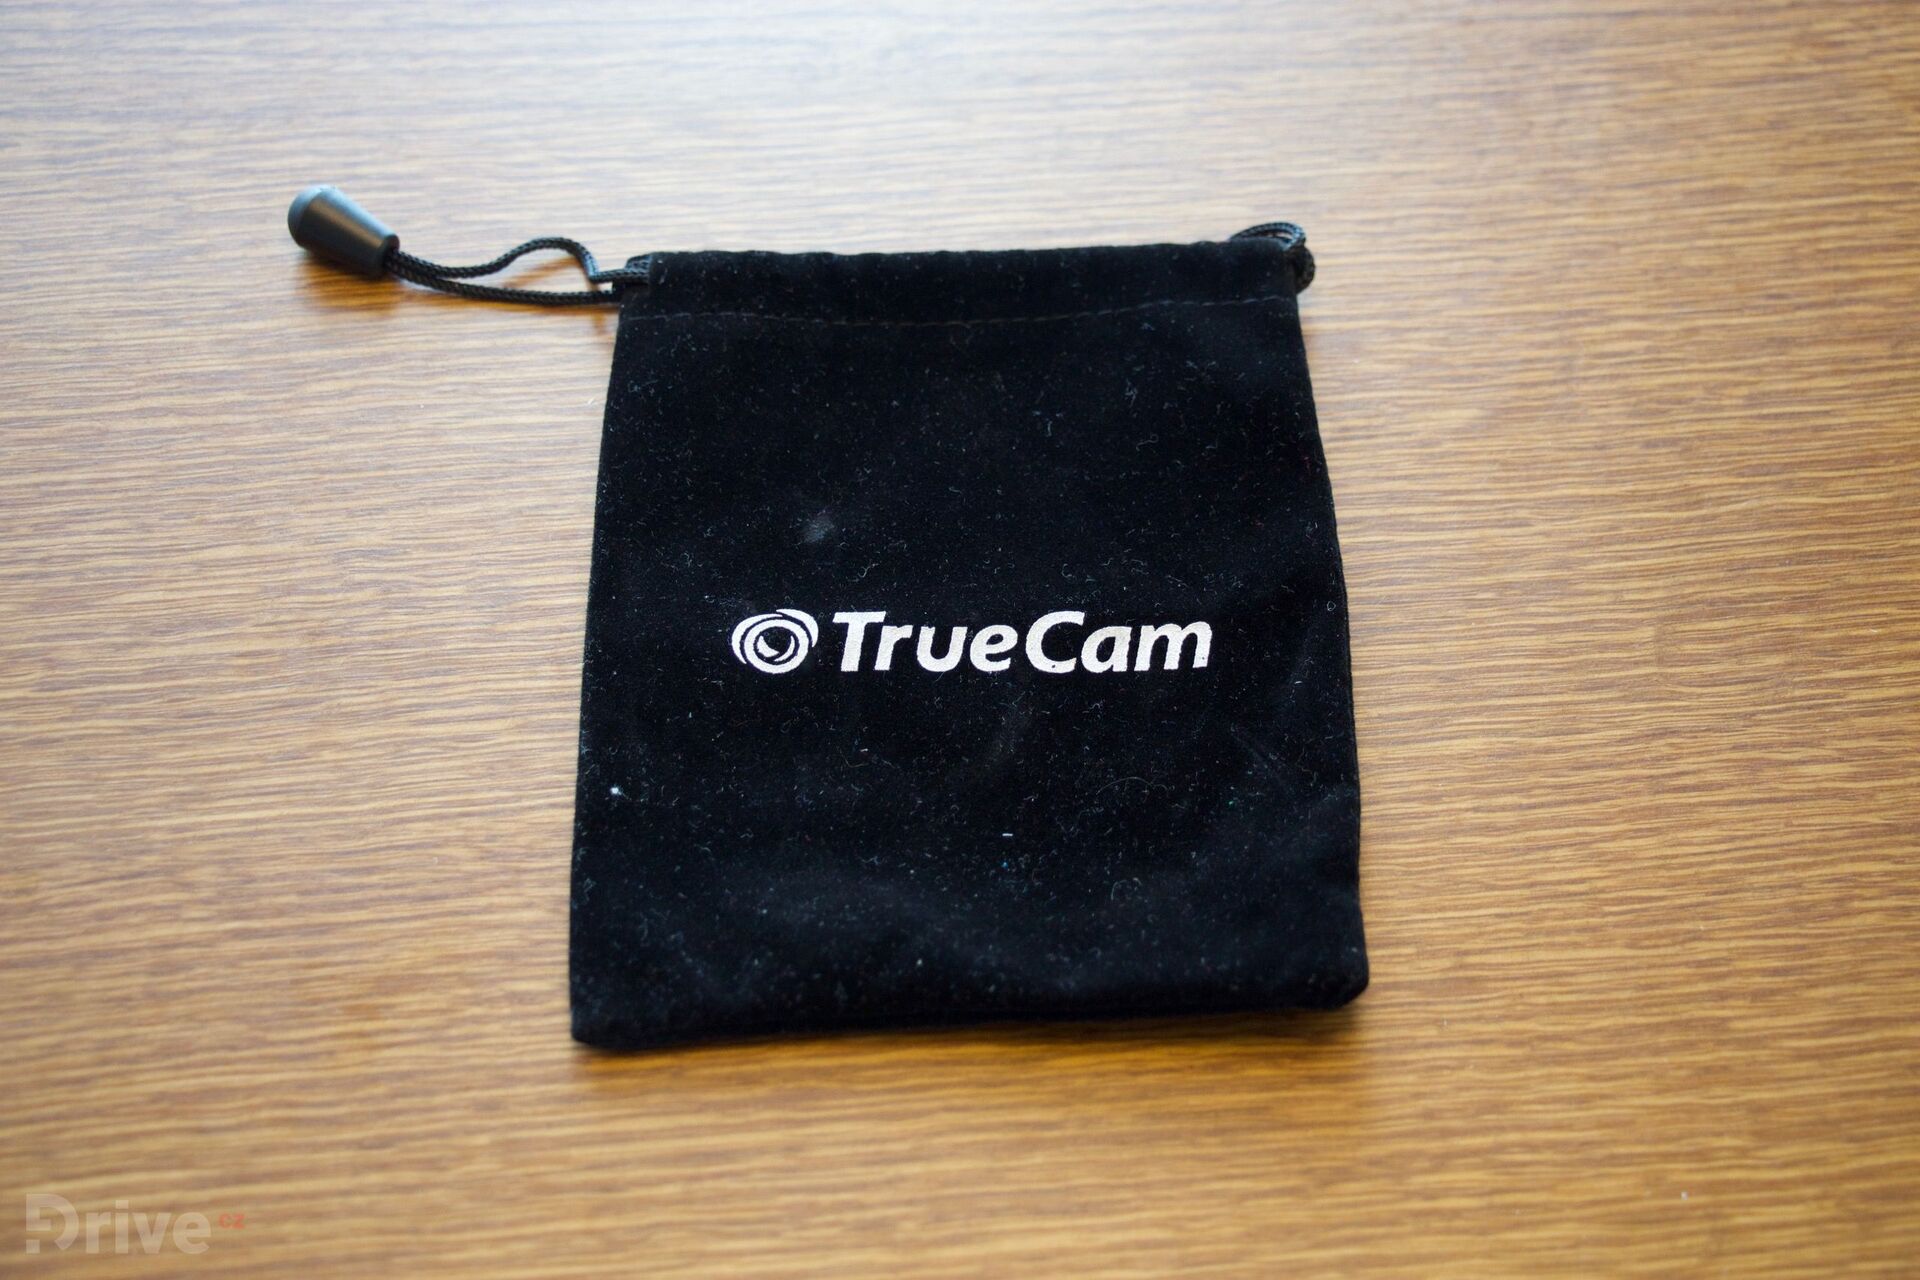 TrueCam A7s